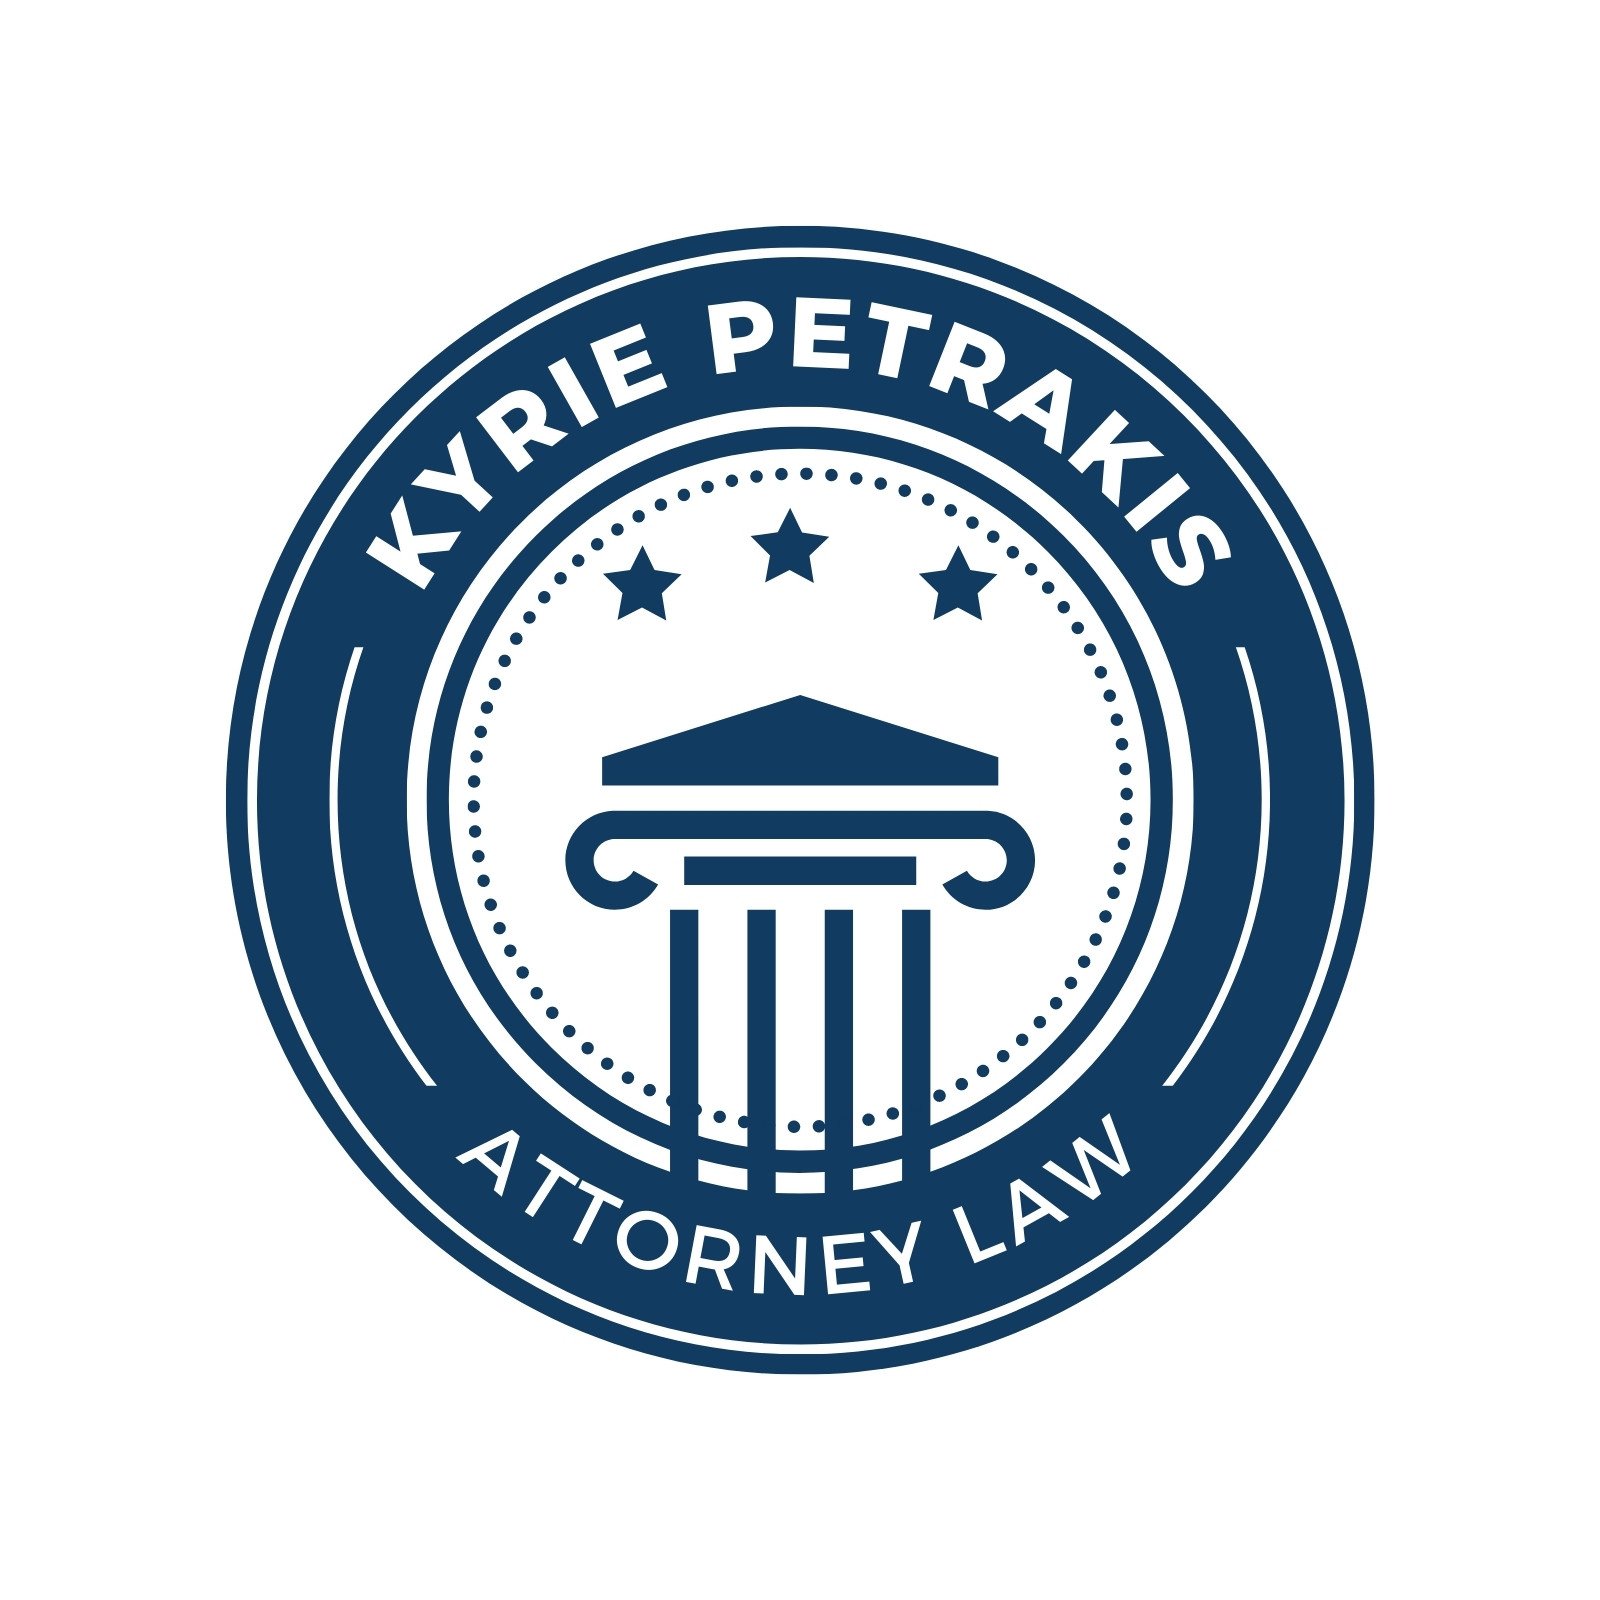 lawyers logo